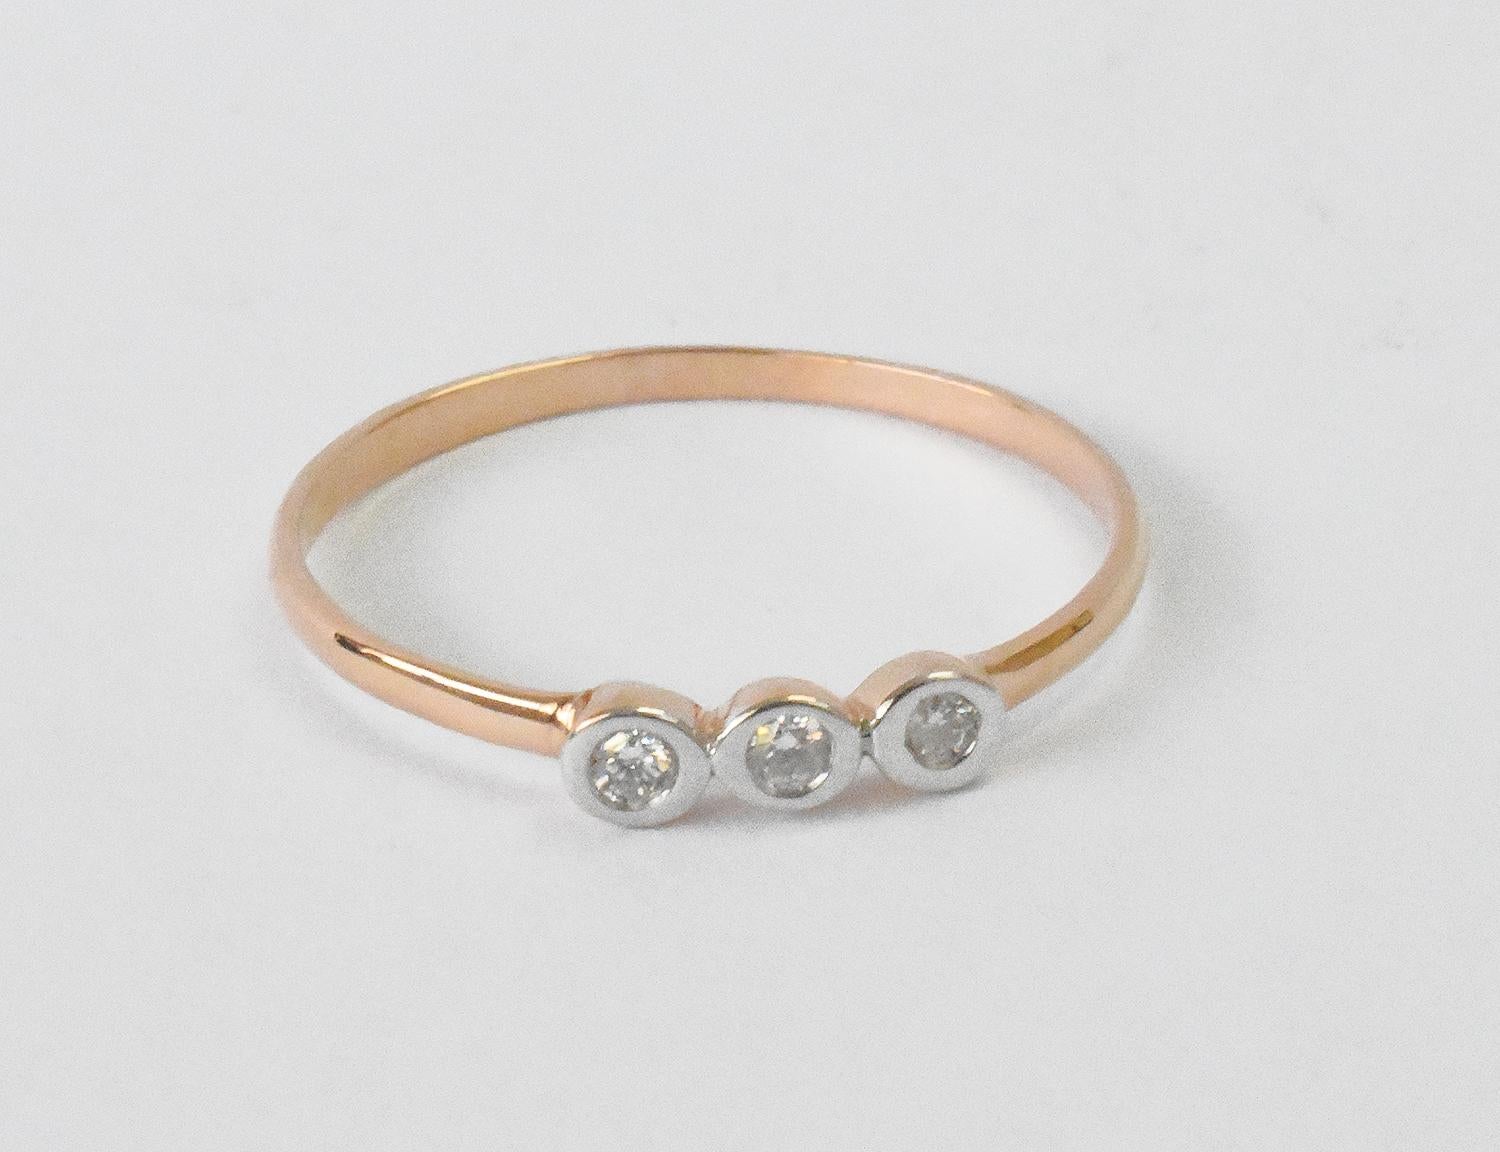 For Sale:  14k Gold Diamond 1.9 mm Ring Bezel Setting Three Diamond Ring Trio Diamond Ring 2